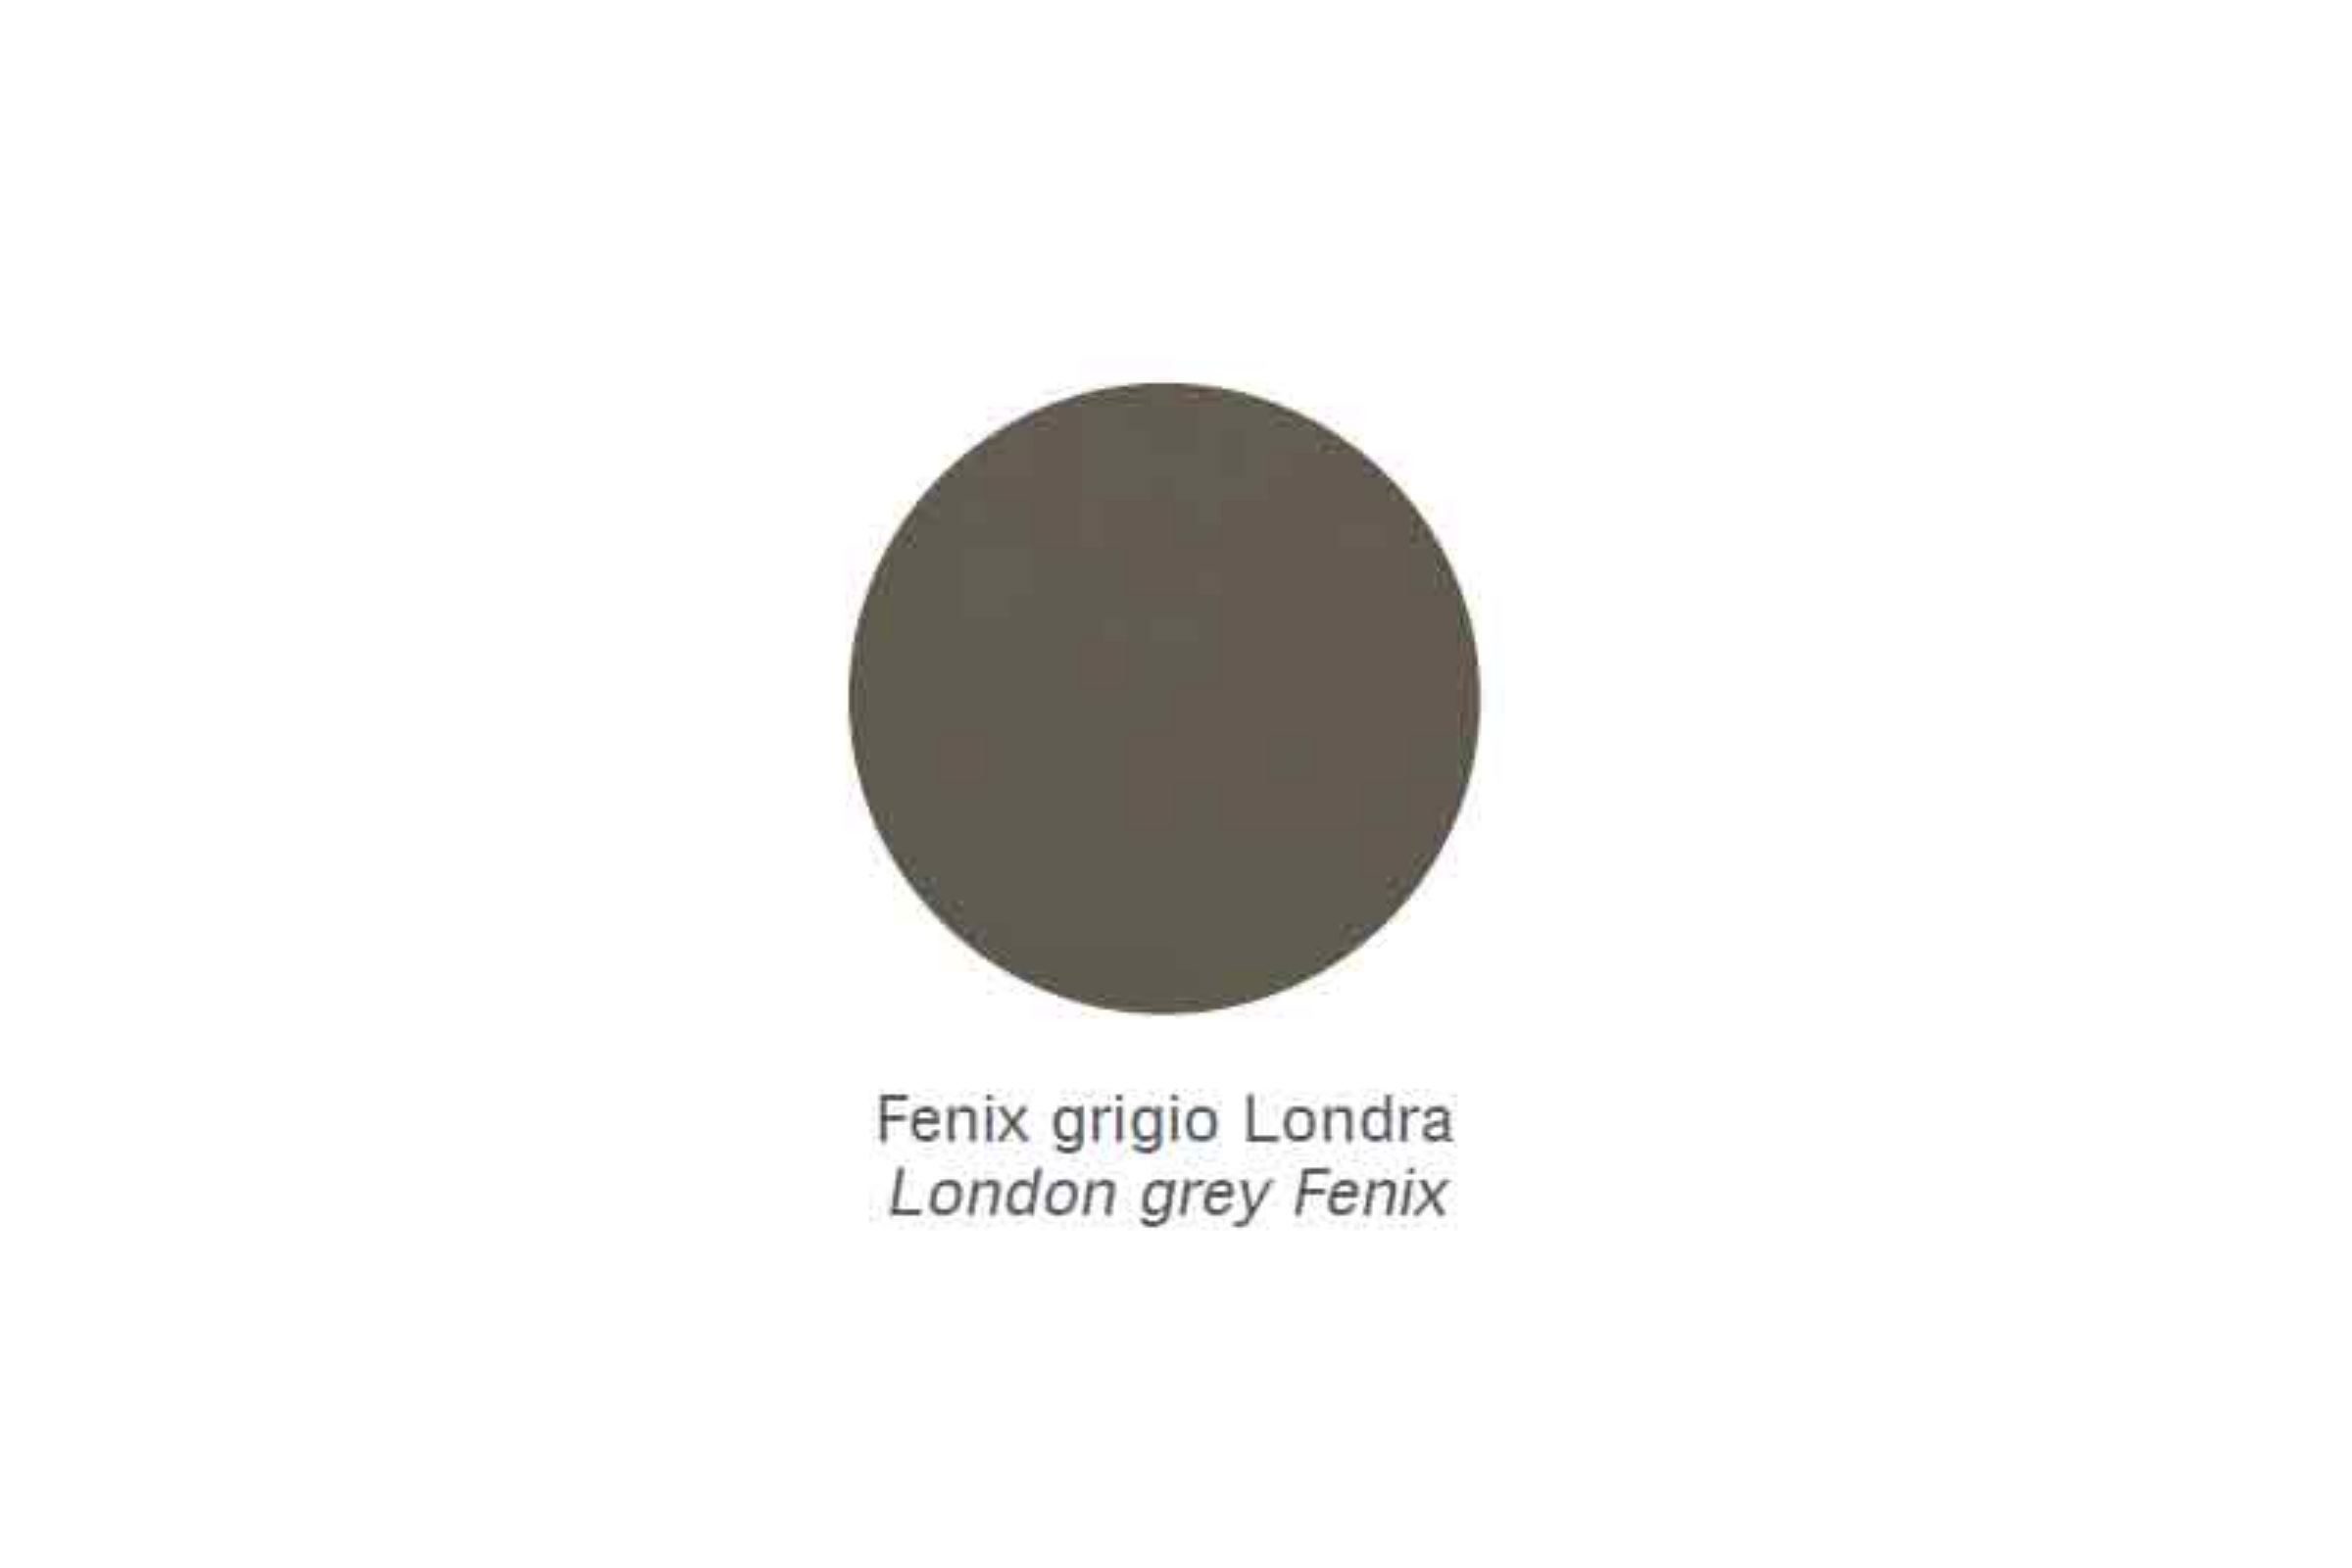 Sgabello con inserti in ottone cromato (anche per interno doccia) Zen - Sgabello con inserti in ottone cromato Zen Fenix grigio Londra